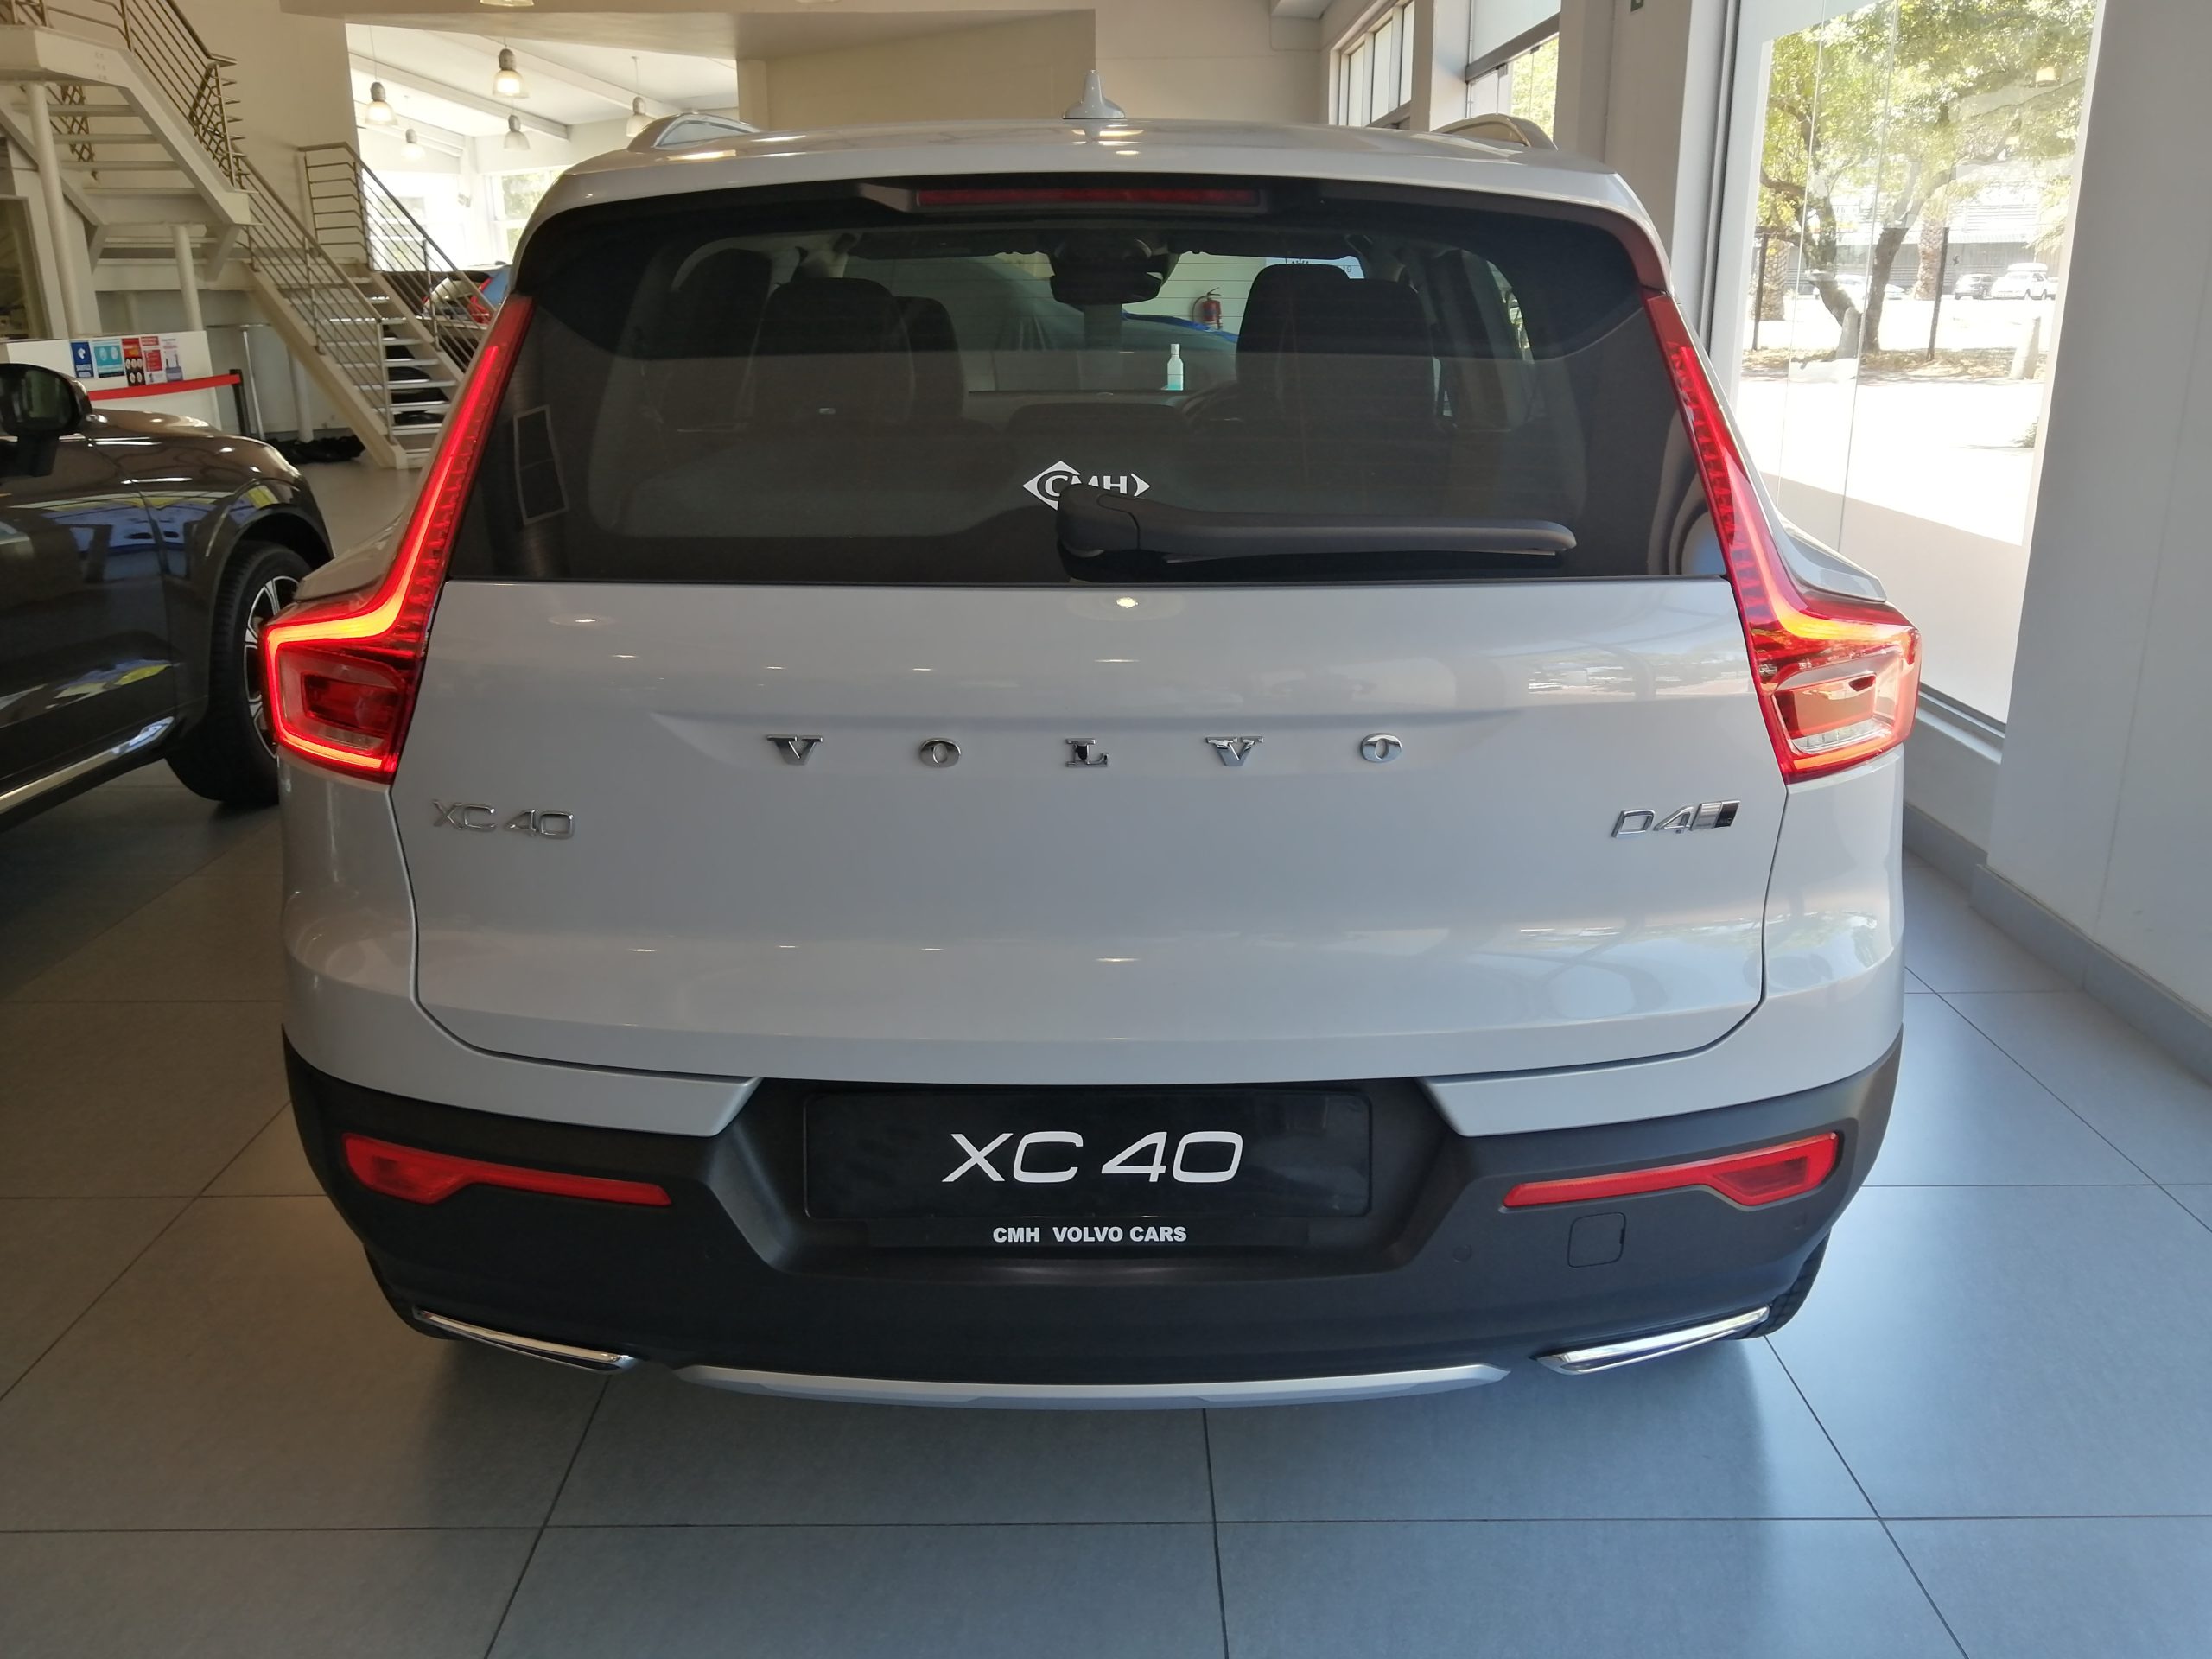 The 2021 Volvo XC40